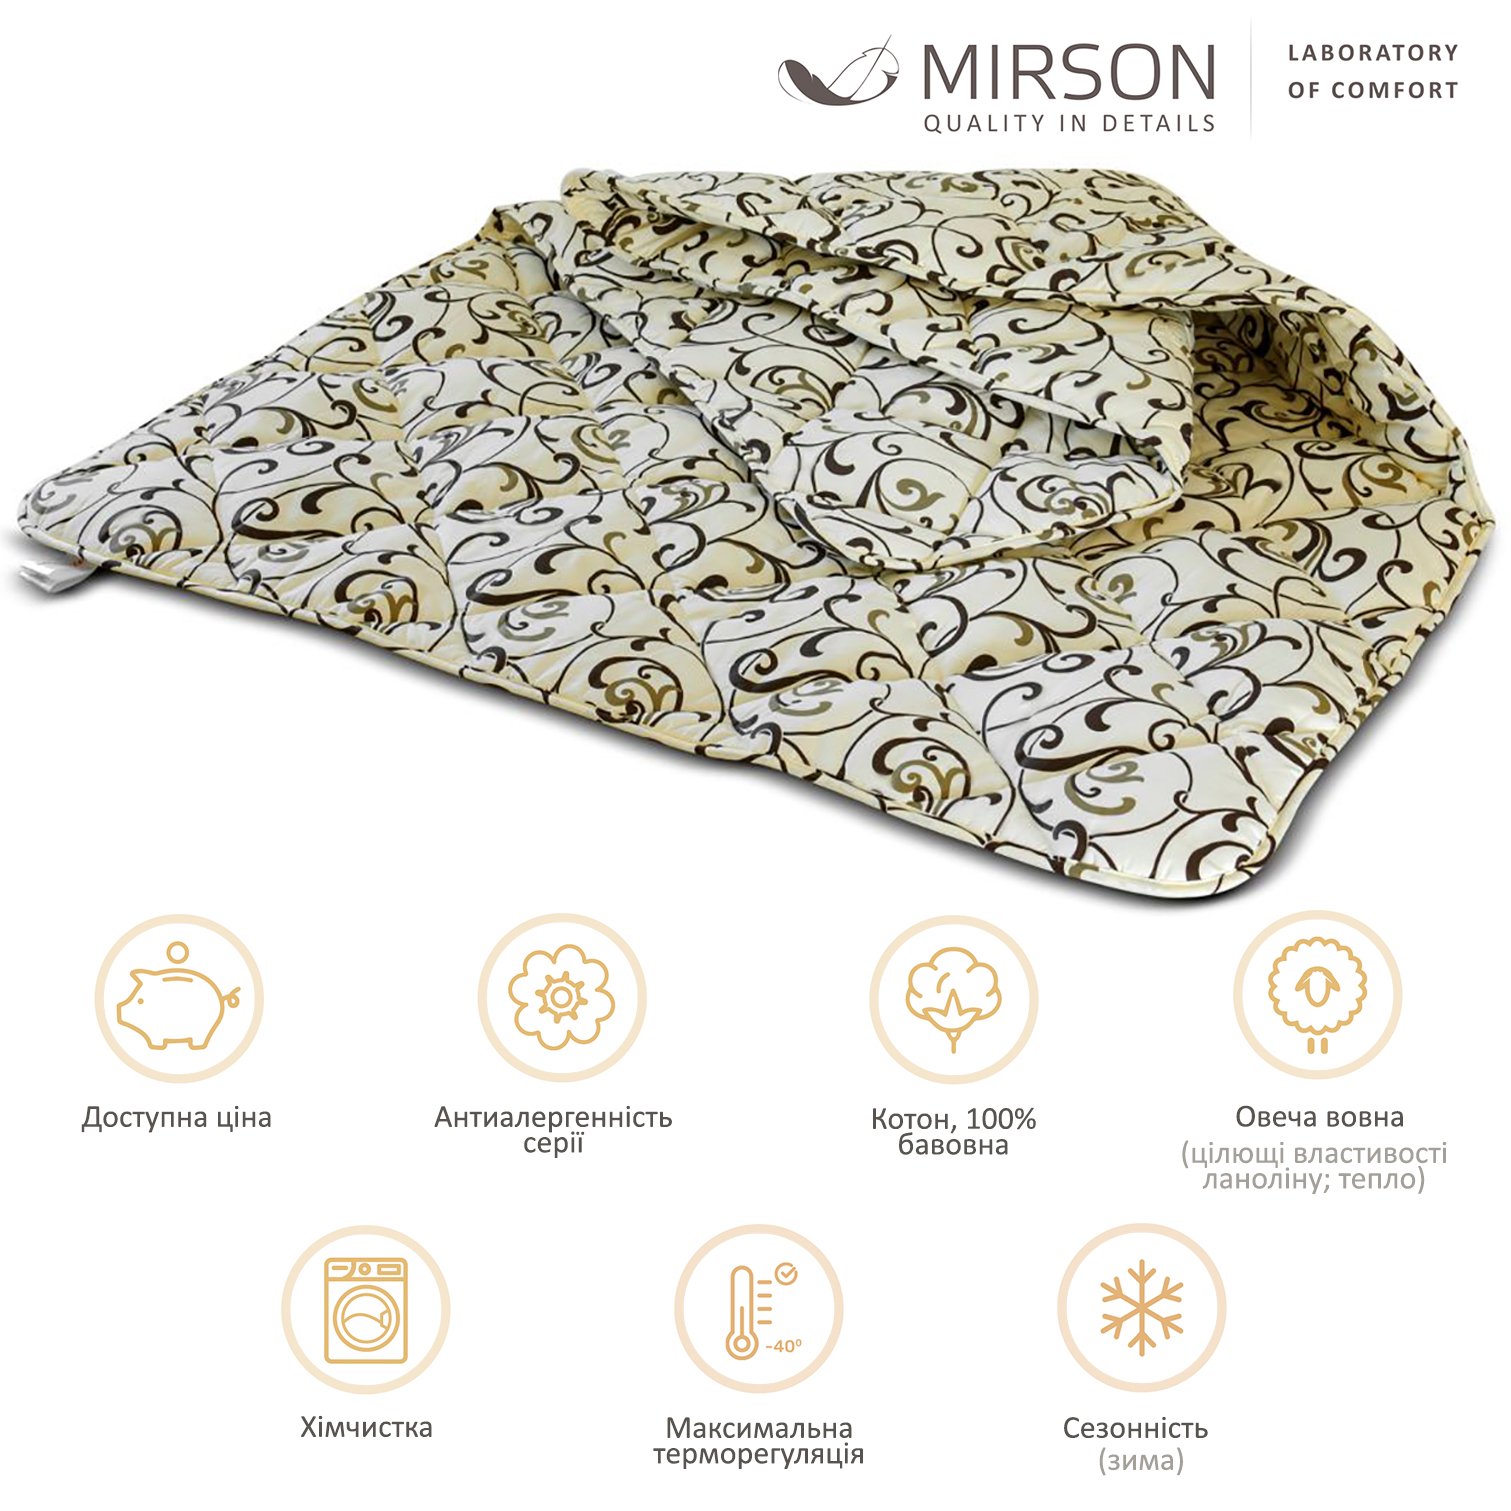 Одеяло шерстяное MirSon №018, зимнее, 155x215 см, бежевое с узором - фото 4